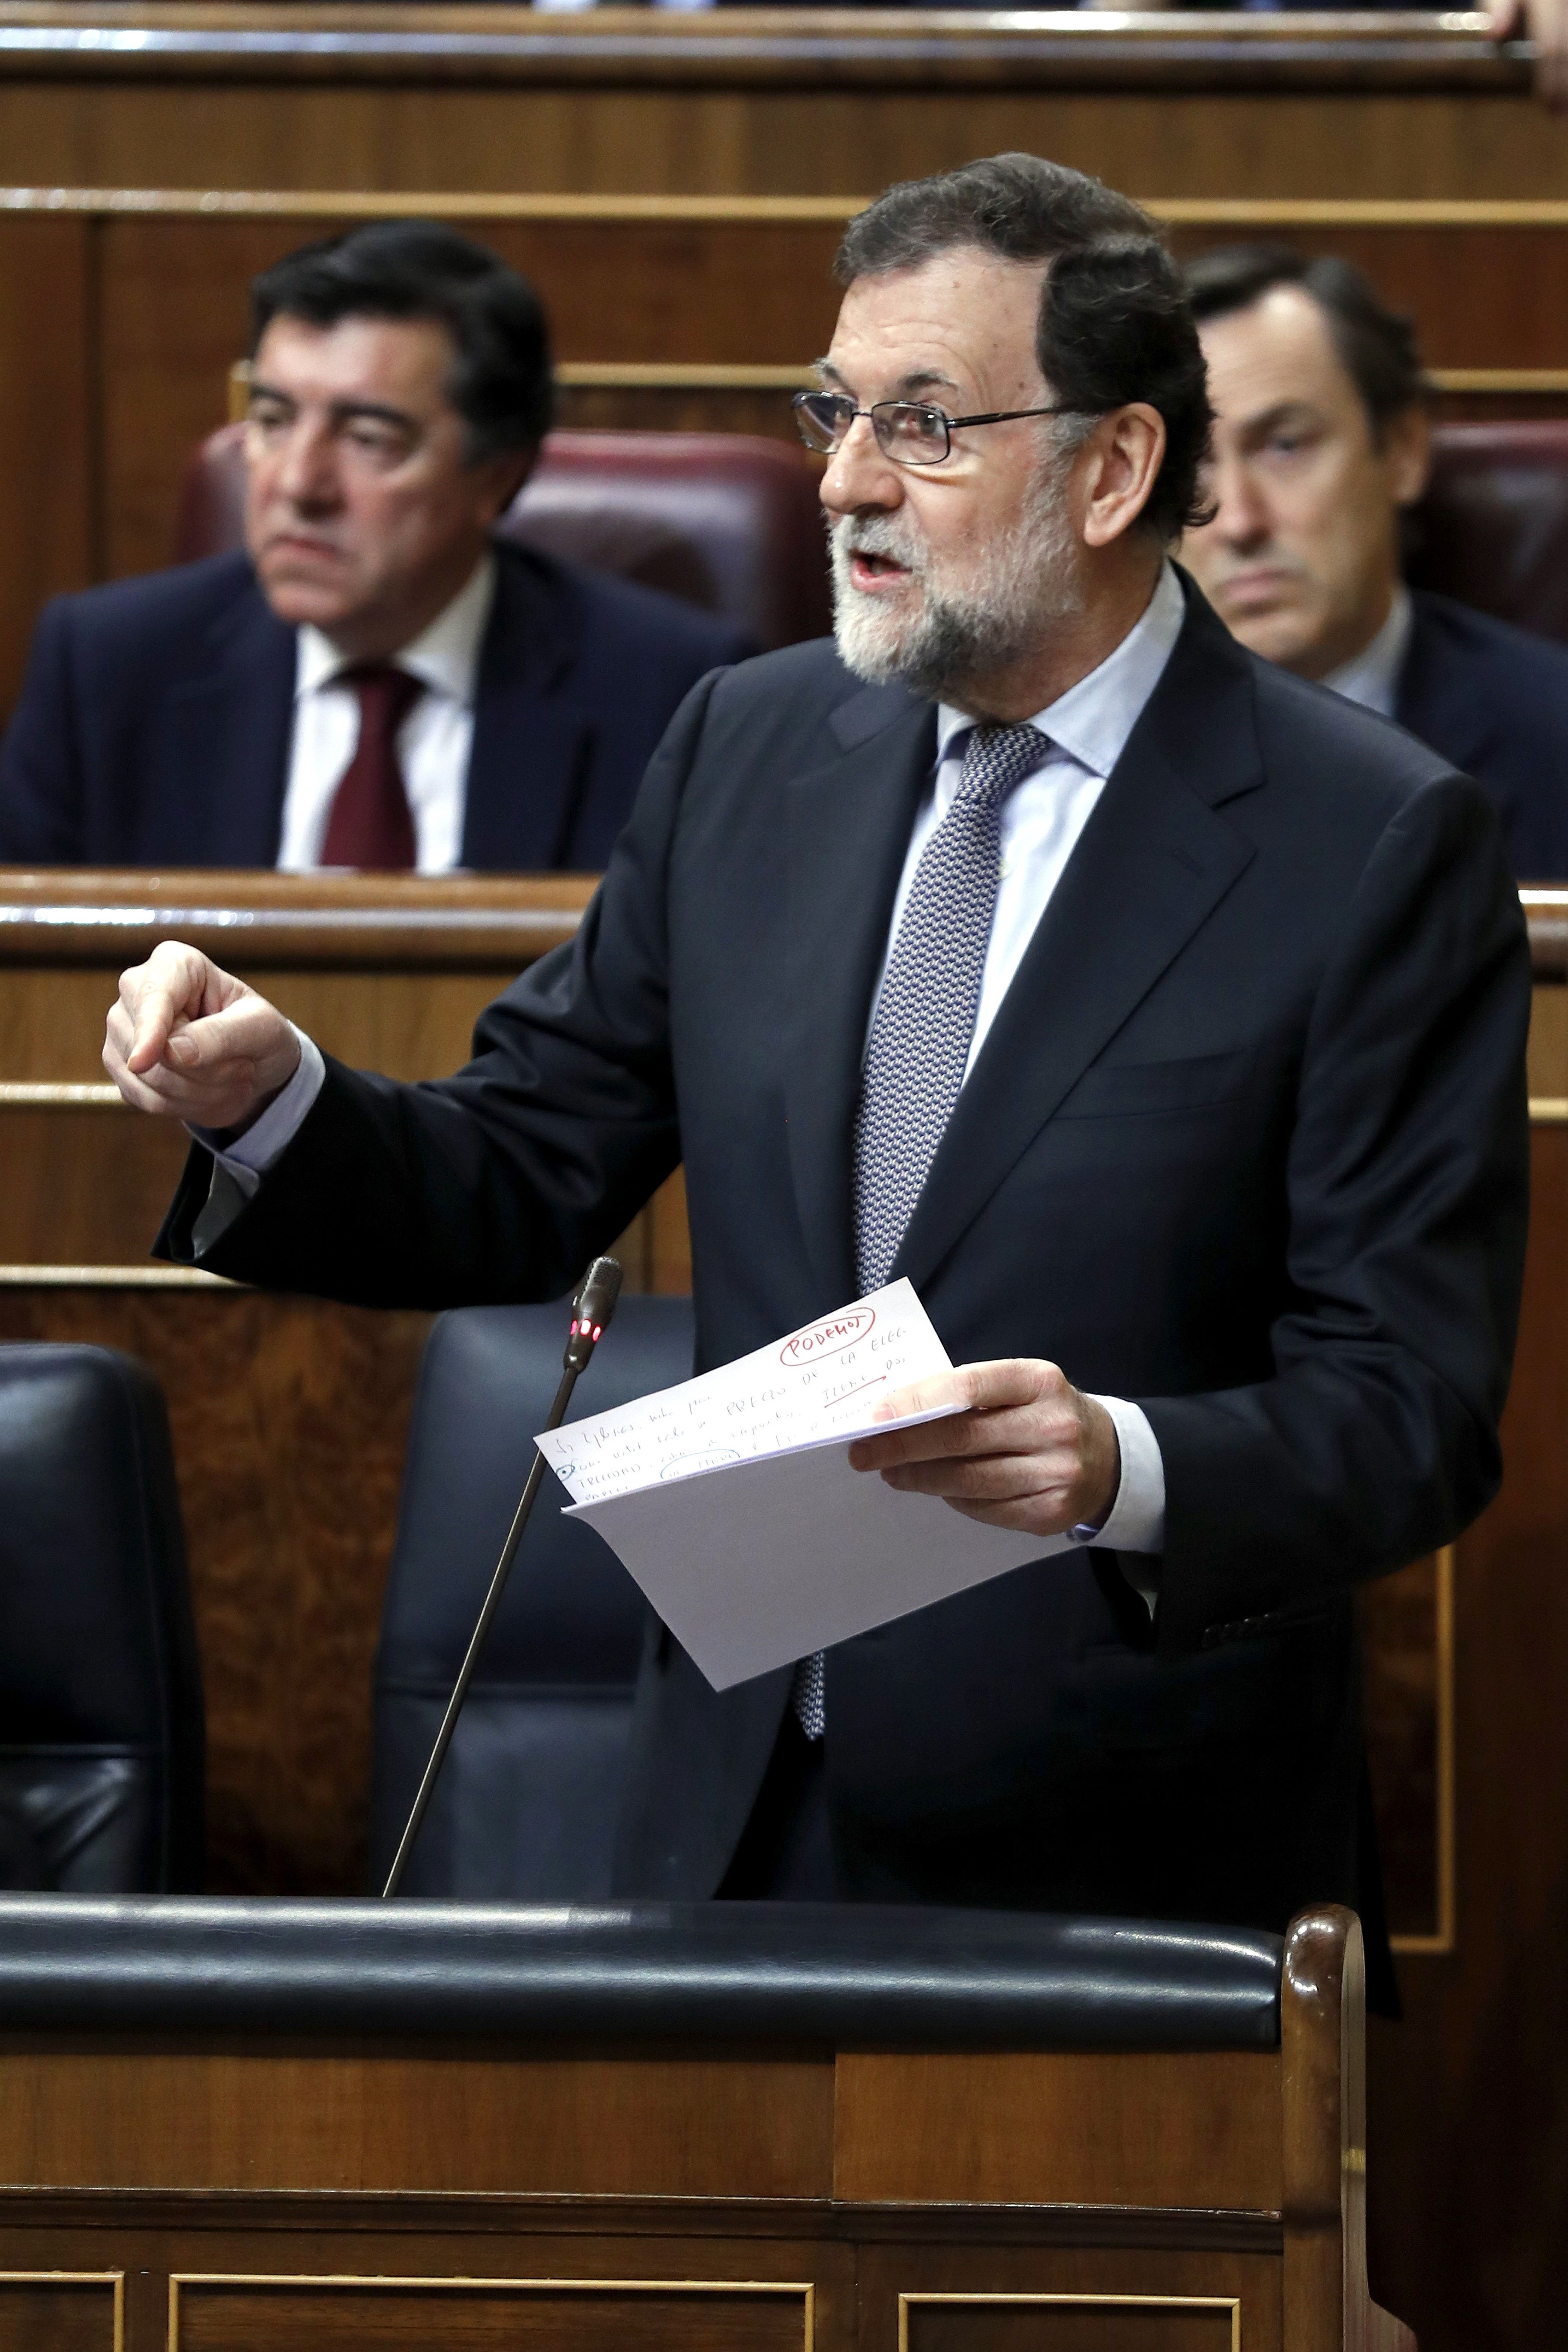 La declaració d'intencions de Rajoy sobre el procés (i altres qüestions)